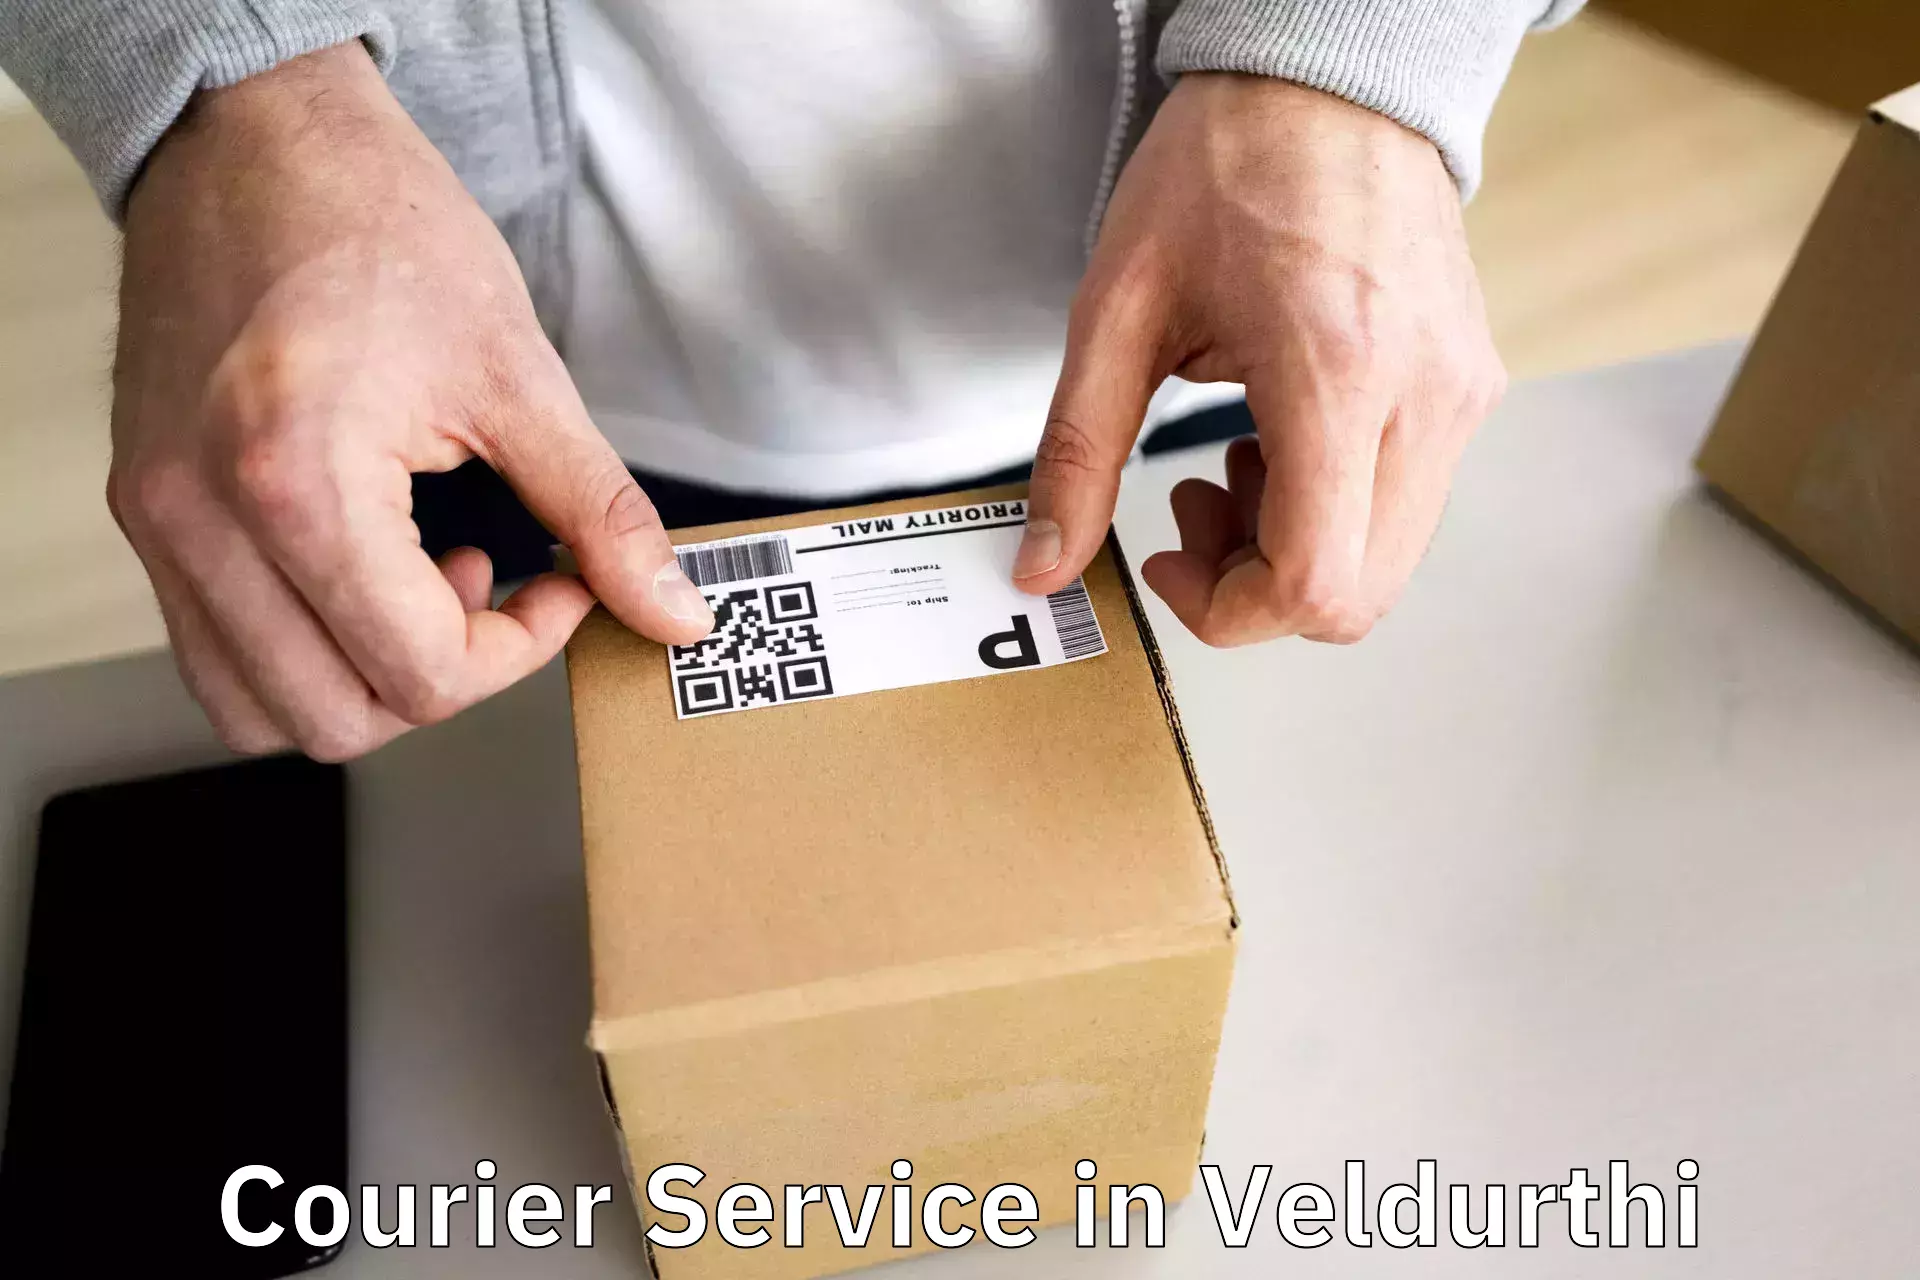 Innovative logistics solutions in Veldurthi